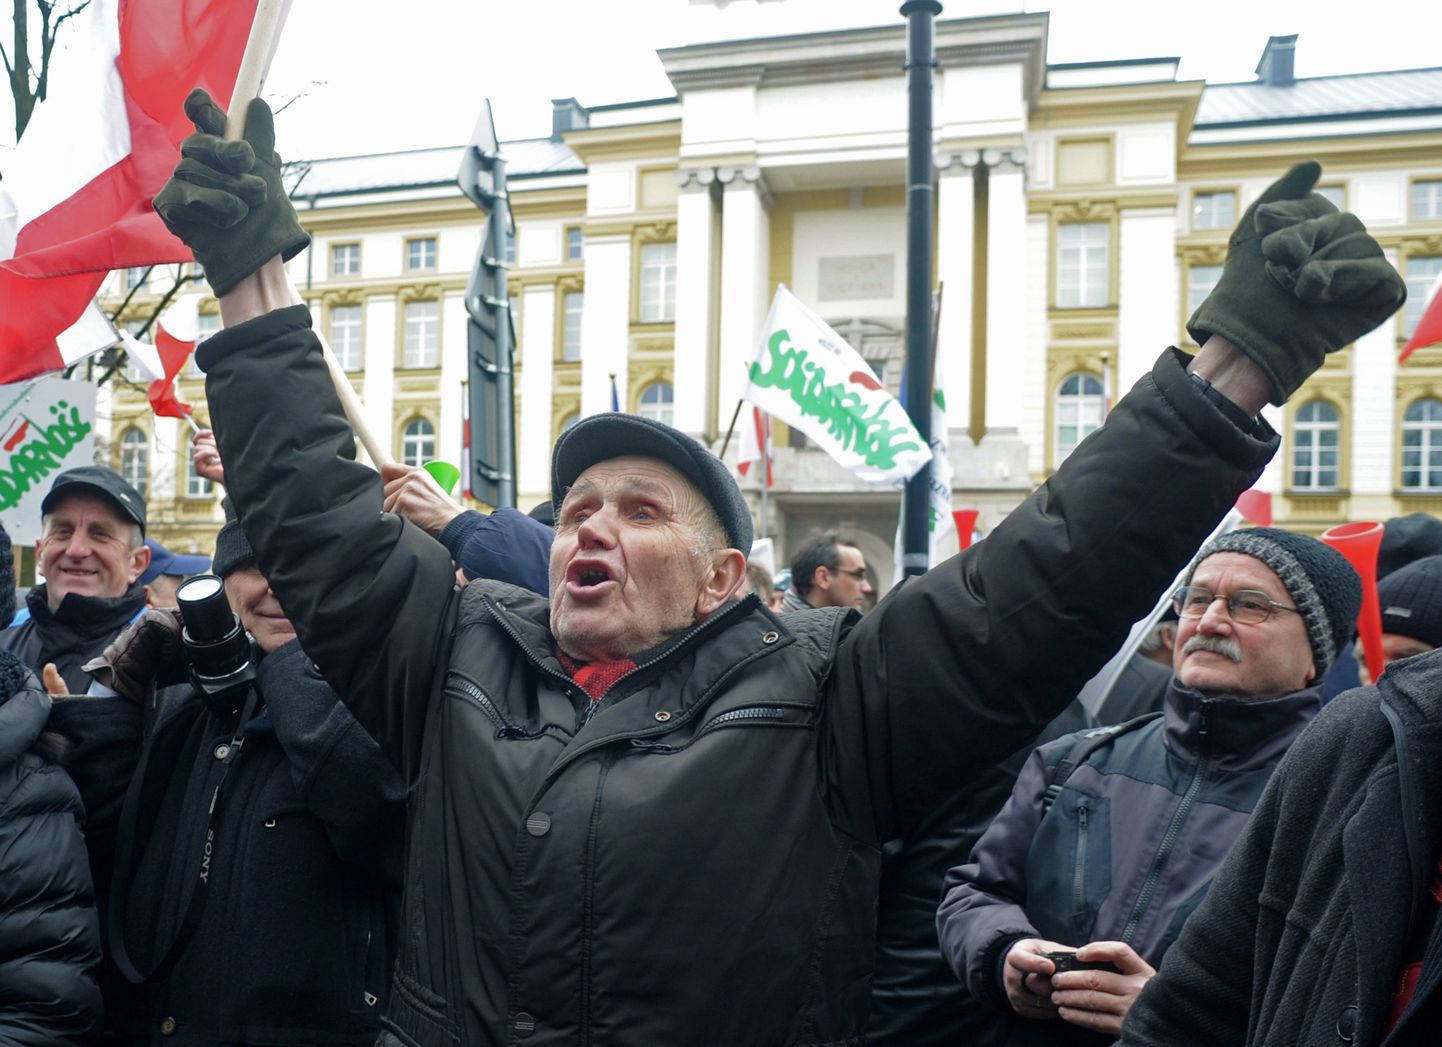 Poola põllumehed protestimas.